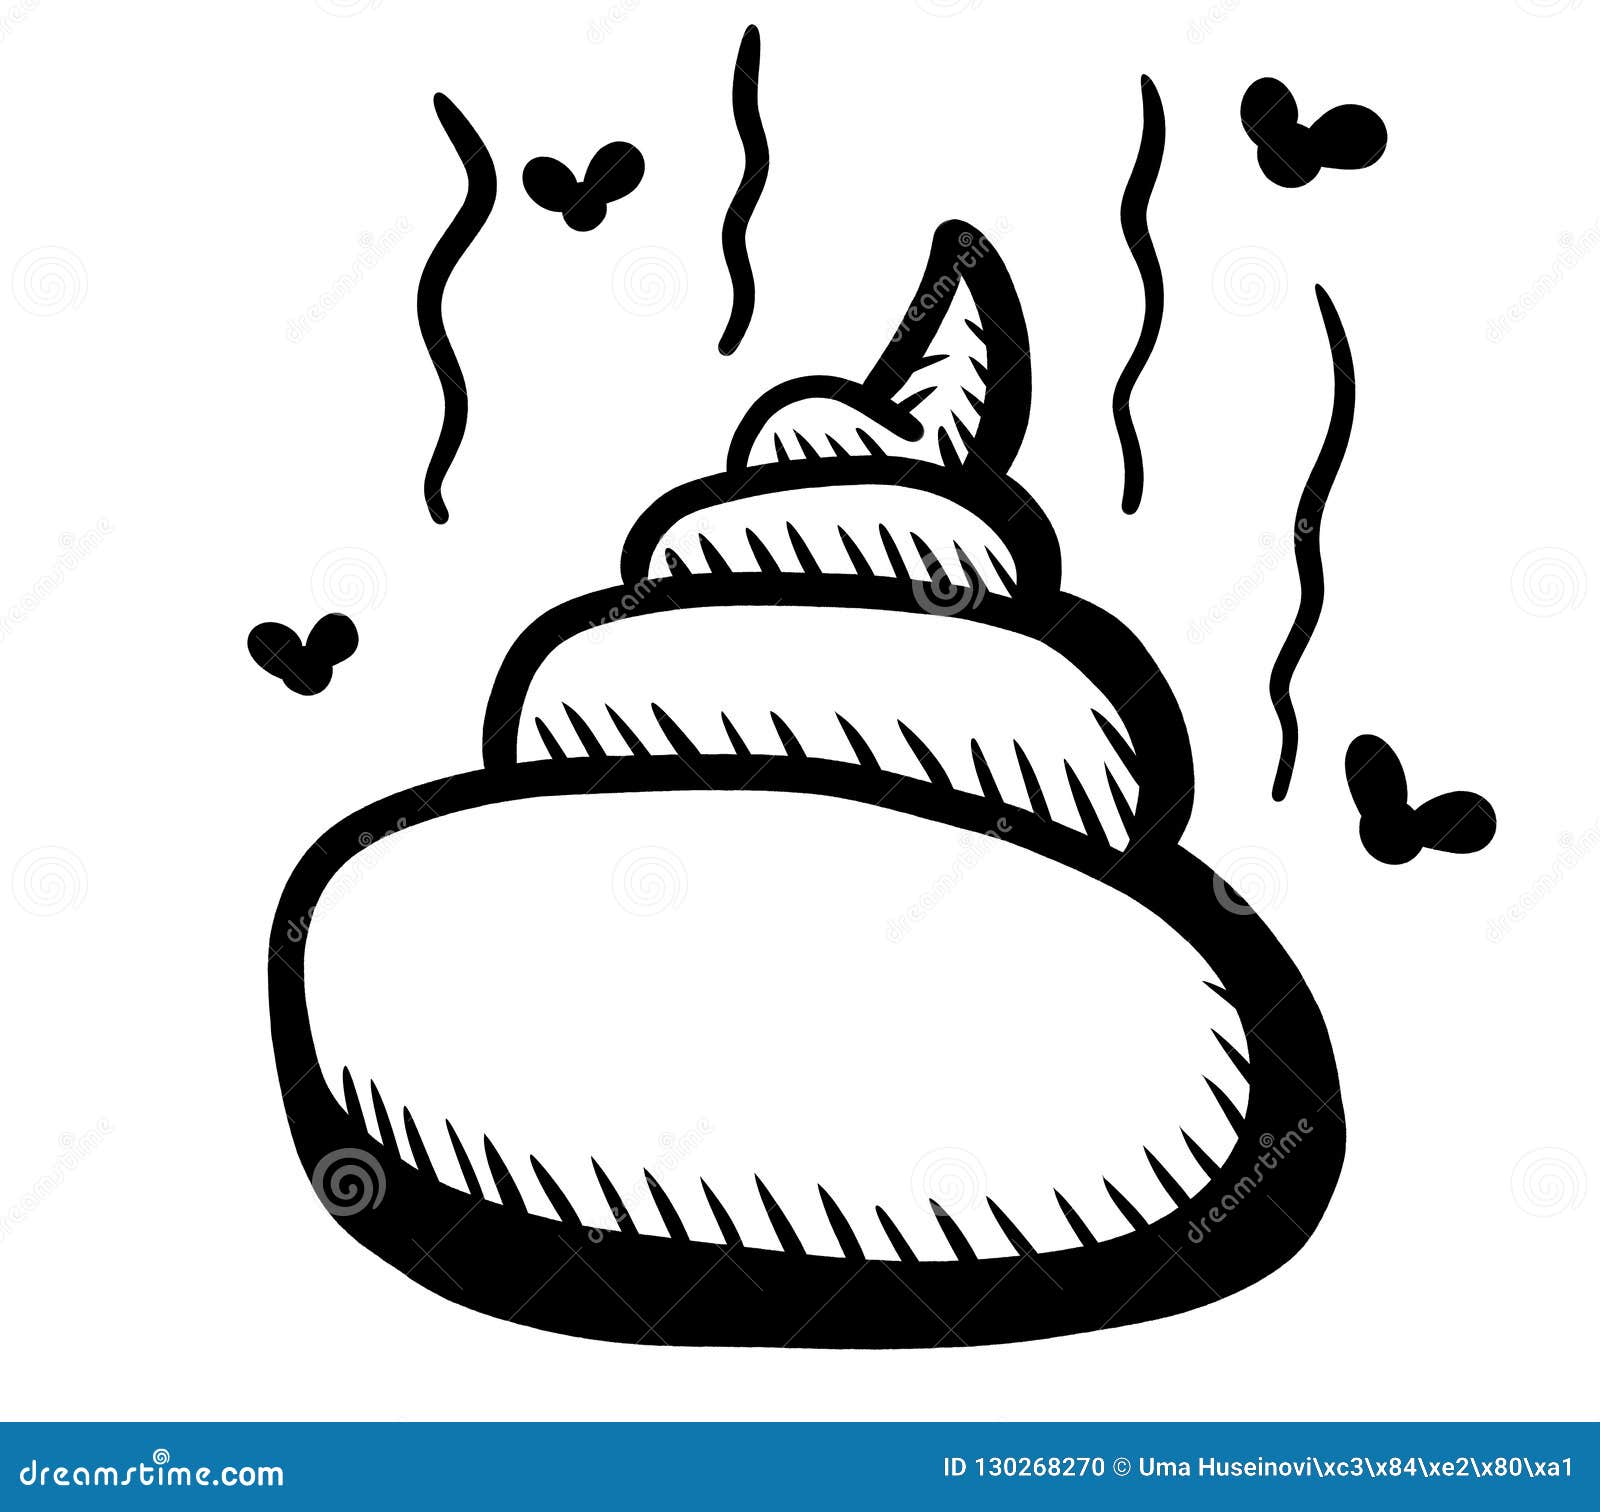 Smelly Poop Doodle stock illustration. Illustration of smelly - 130268270